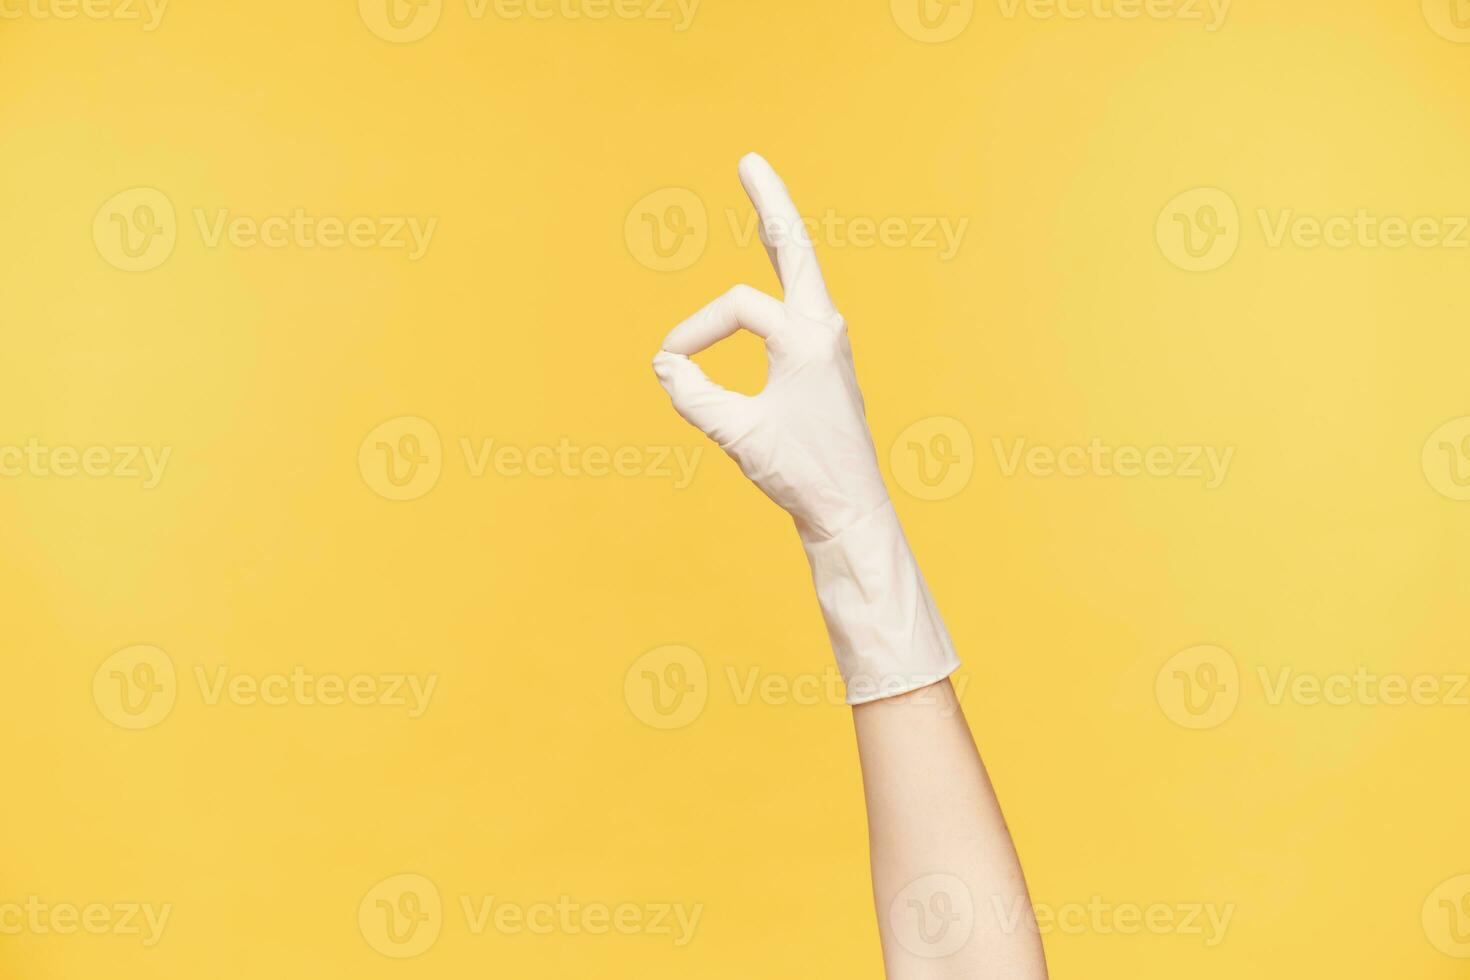 interior Disparo de elevado femenino mano en caucho blanco guante formando con dedos bien hecho gesto, refinamiento primavera limpieza y siendo satisfecho, posando terminado naranja antecedentes foto